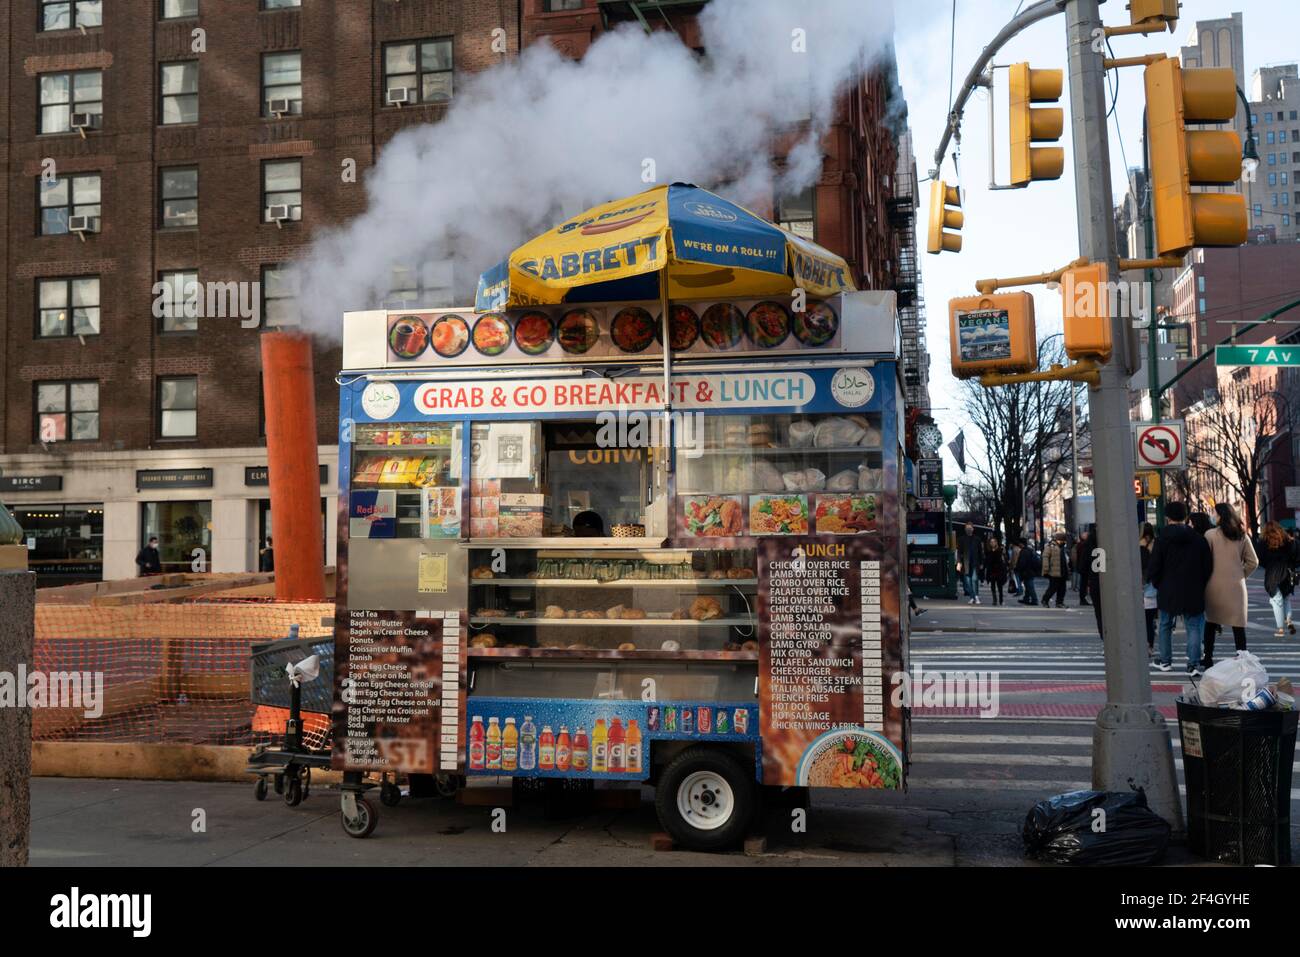 Un vendeur à l'angle de la septième Avenue et de la 14e rue dans le Greenwich Village de Manhattan a un panneau sur son chariot qui indique qu'il vend de la nourriture halal. Banque D'Images